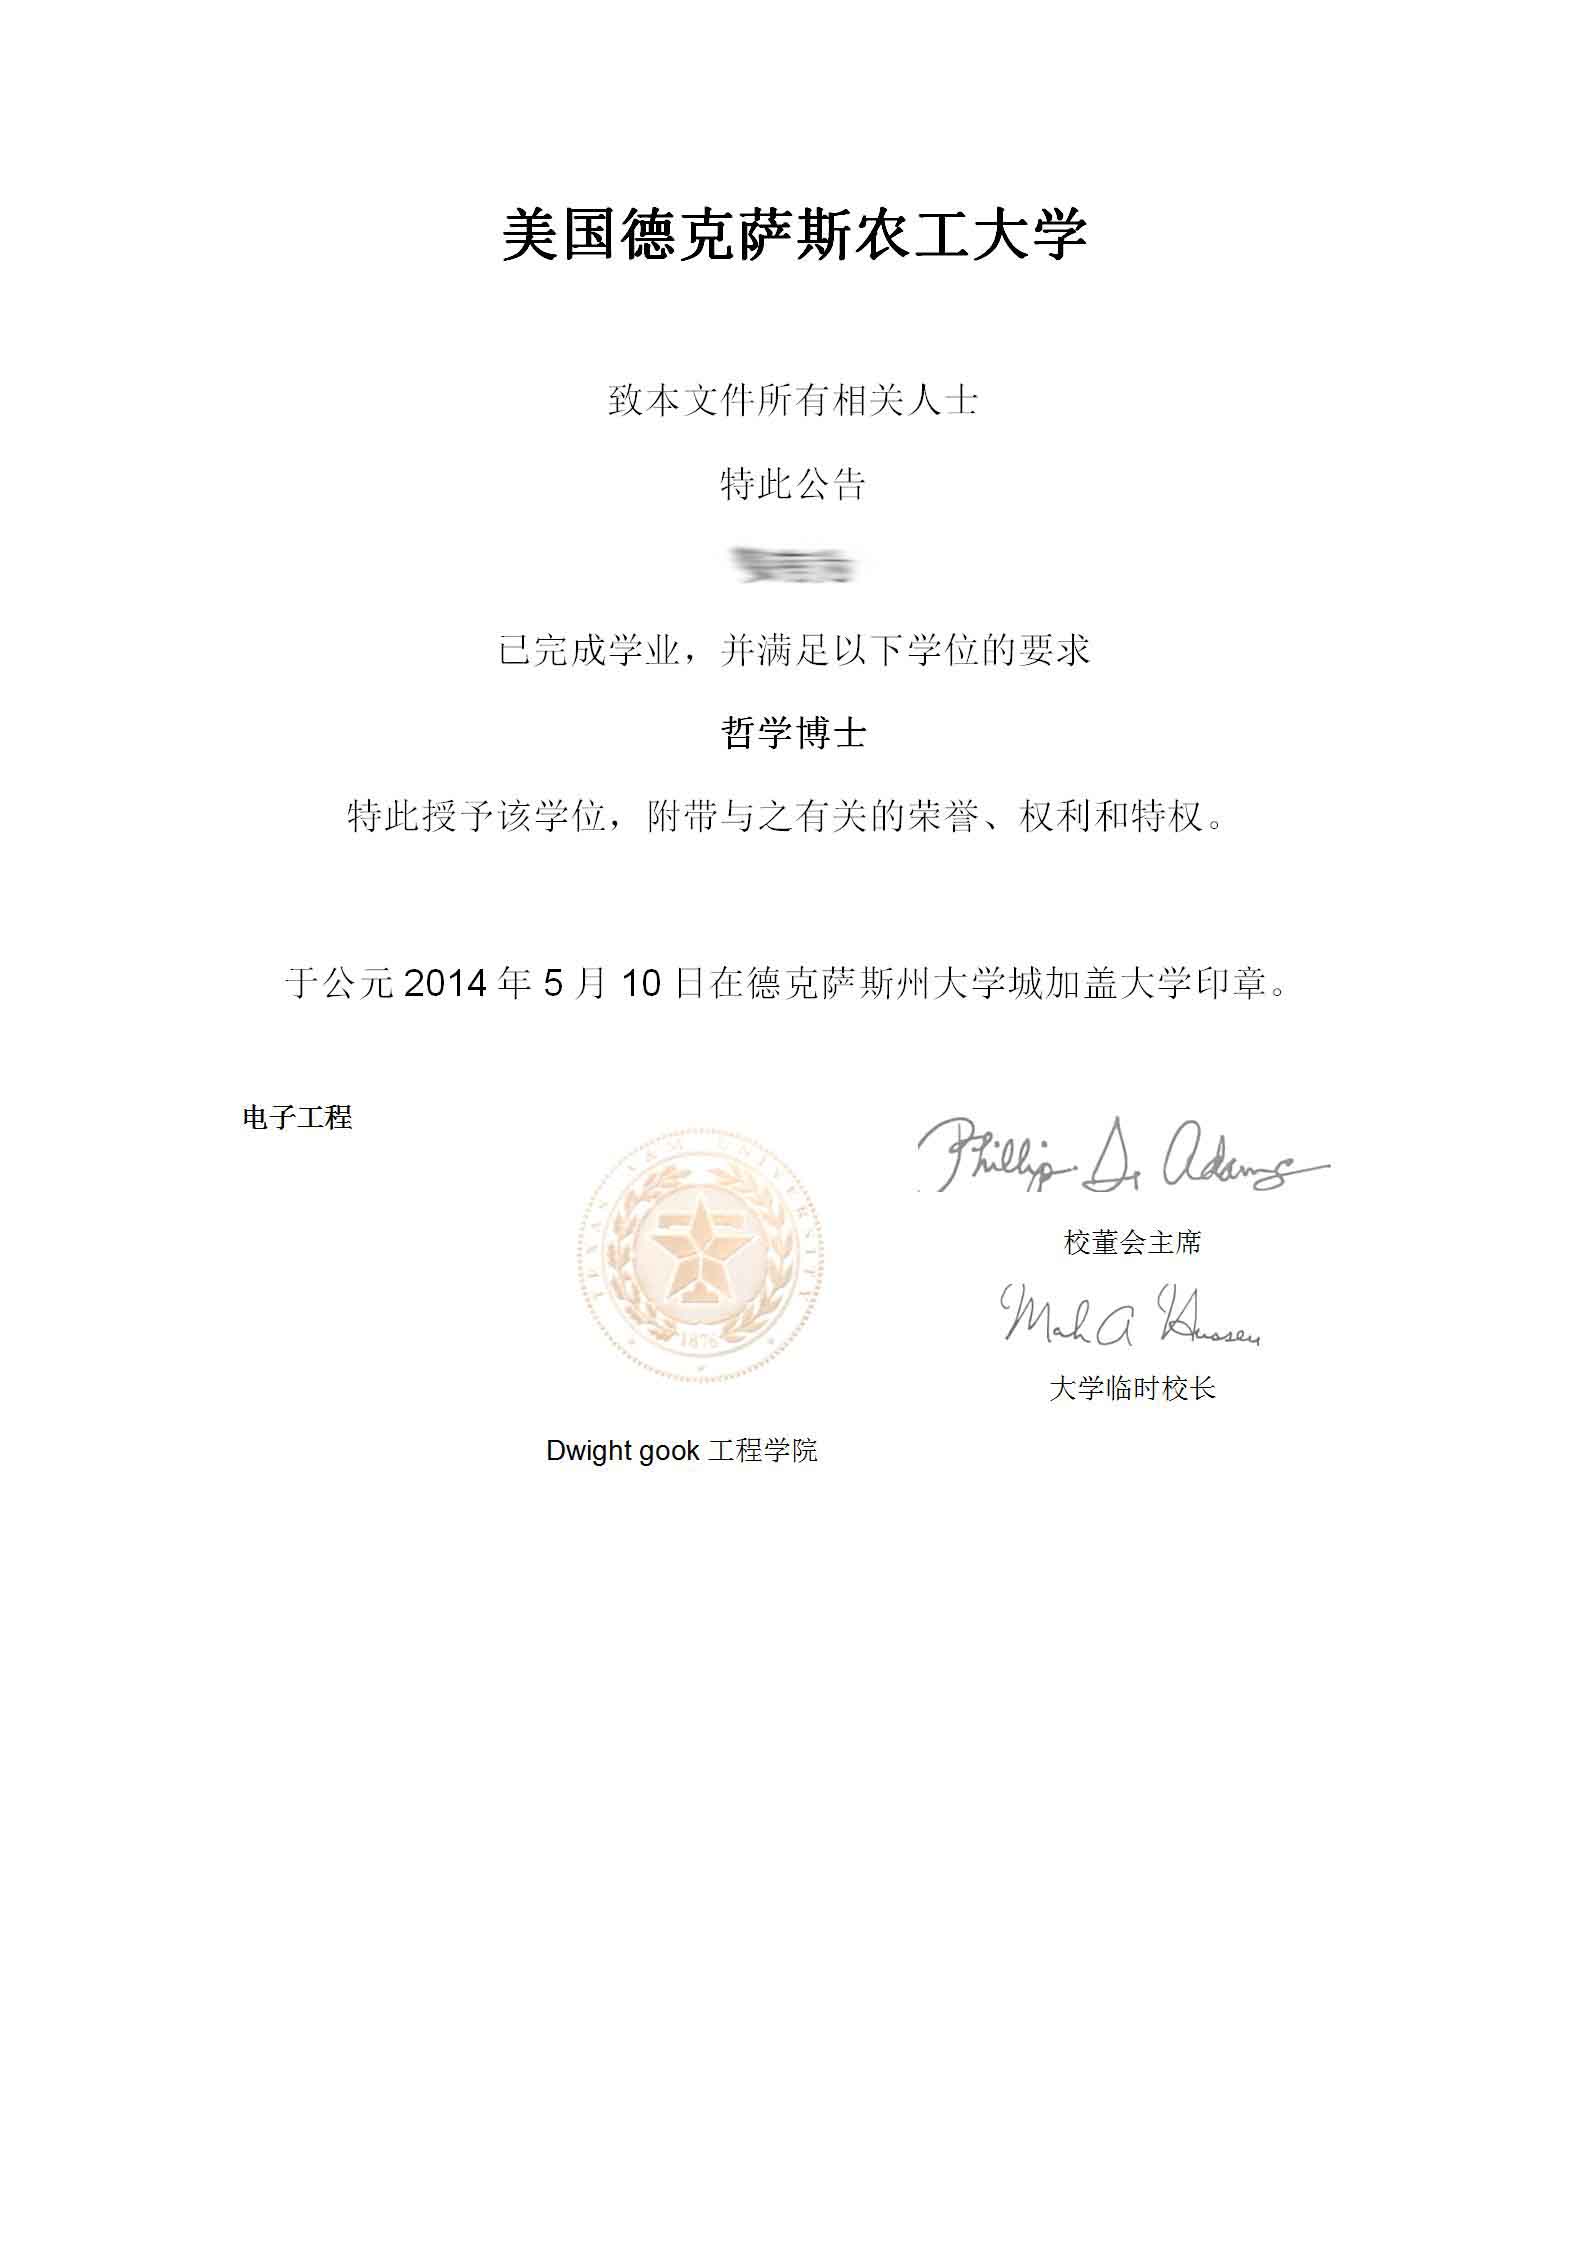 姜有为 01 - 美国德克萨斯州农工大学博士学位证翻译认证盖章